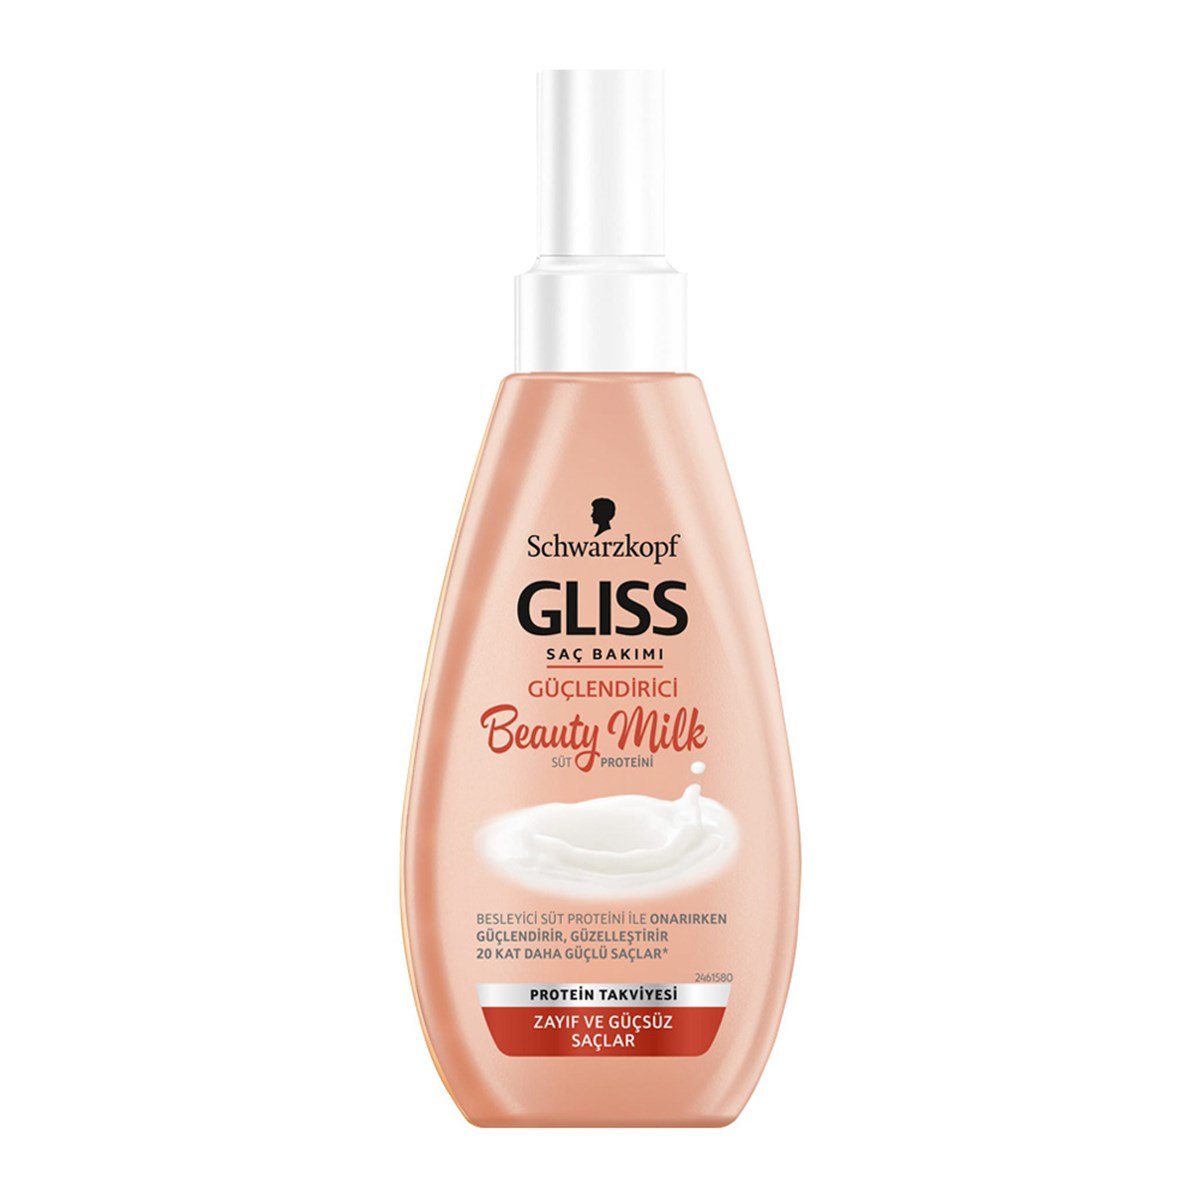 Gliss Beauty Milk Güçlendirici Zayıf ve Güçsüz Saçlar İçin Sıvı Saç Spreyi  150ml - Platin